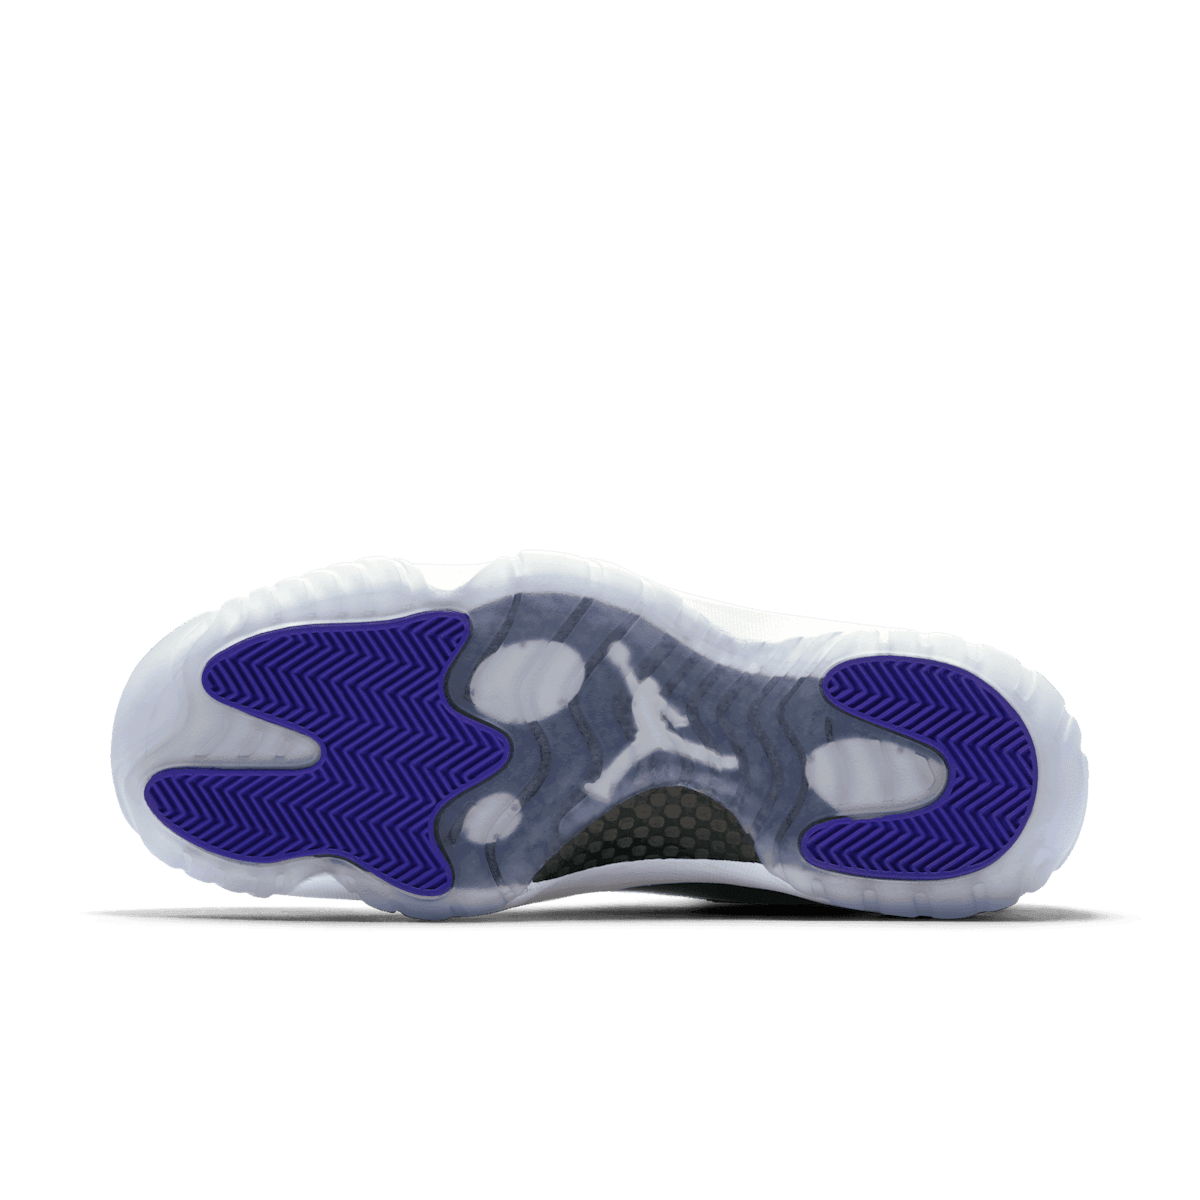 Air Jordan 11 Retro Concord - 2018 Release sneakers